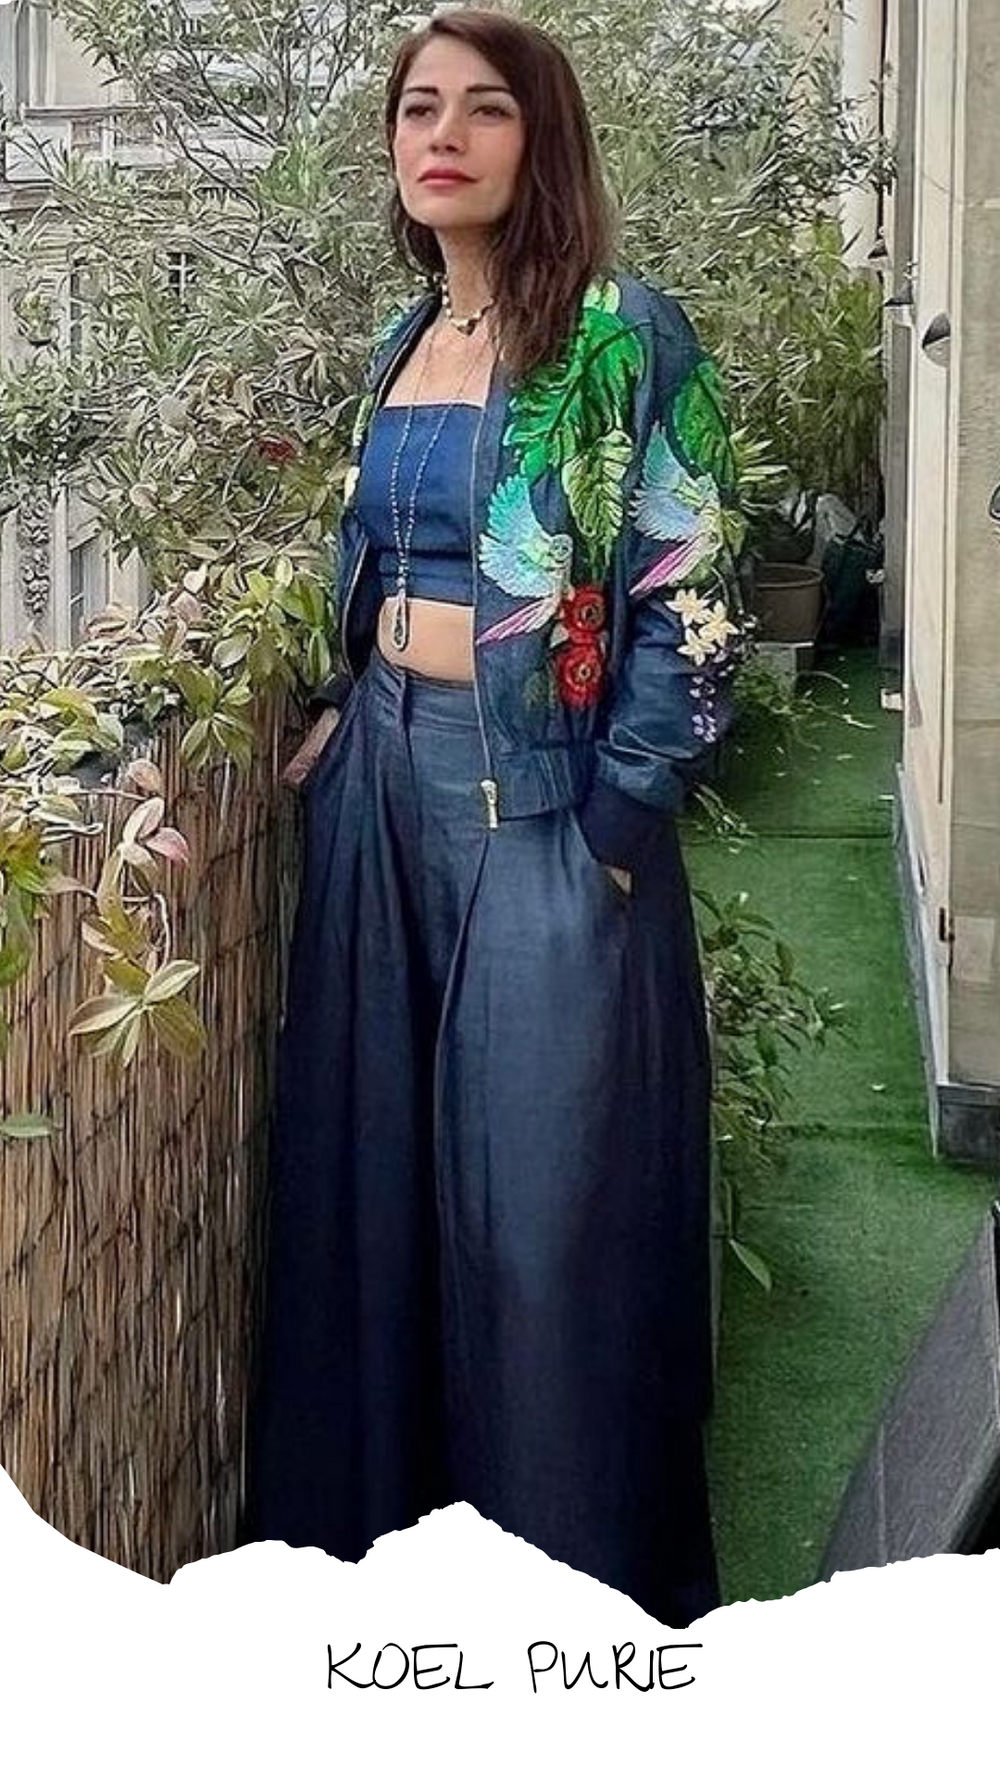 Koel Puri wearing Betrue Clothing